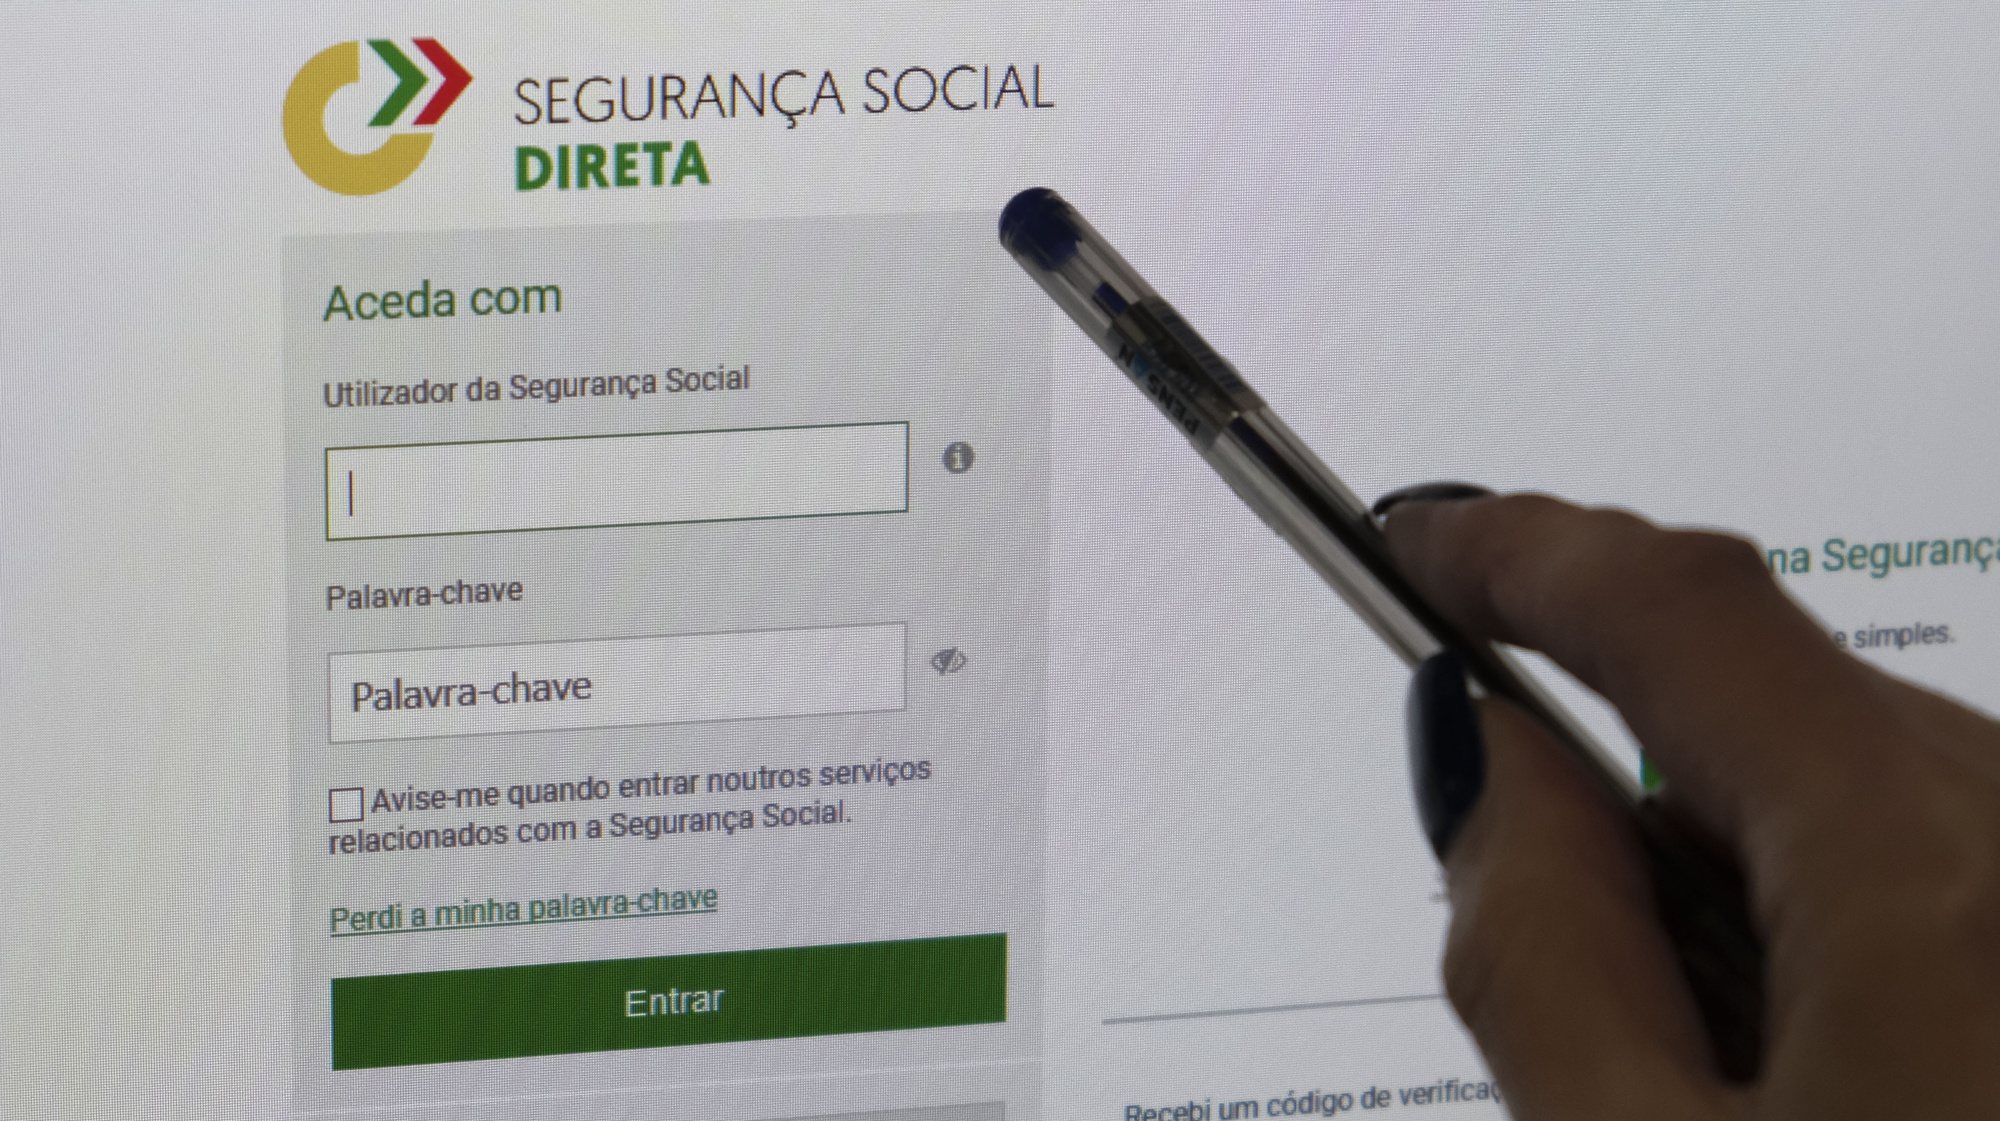 Página da segurança social direta , 08 de abril de 2022. ANTÓNIO COTRIM/LUSA